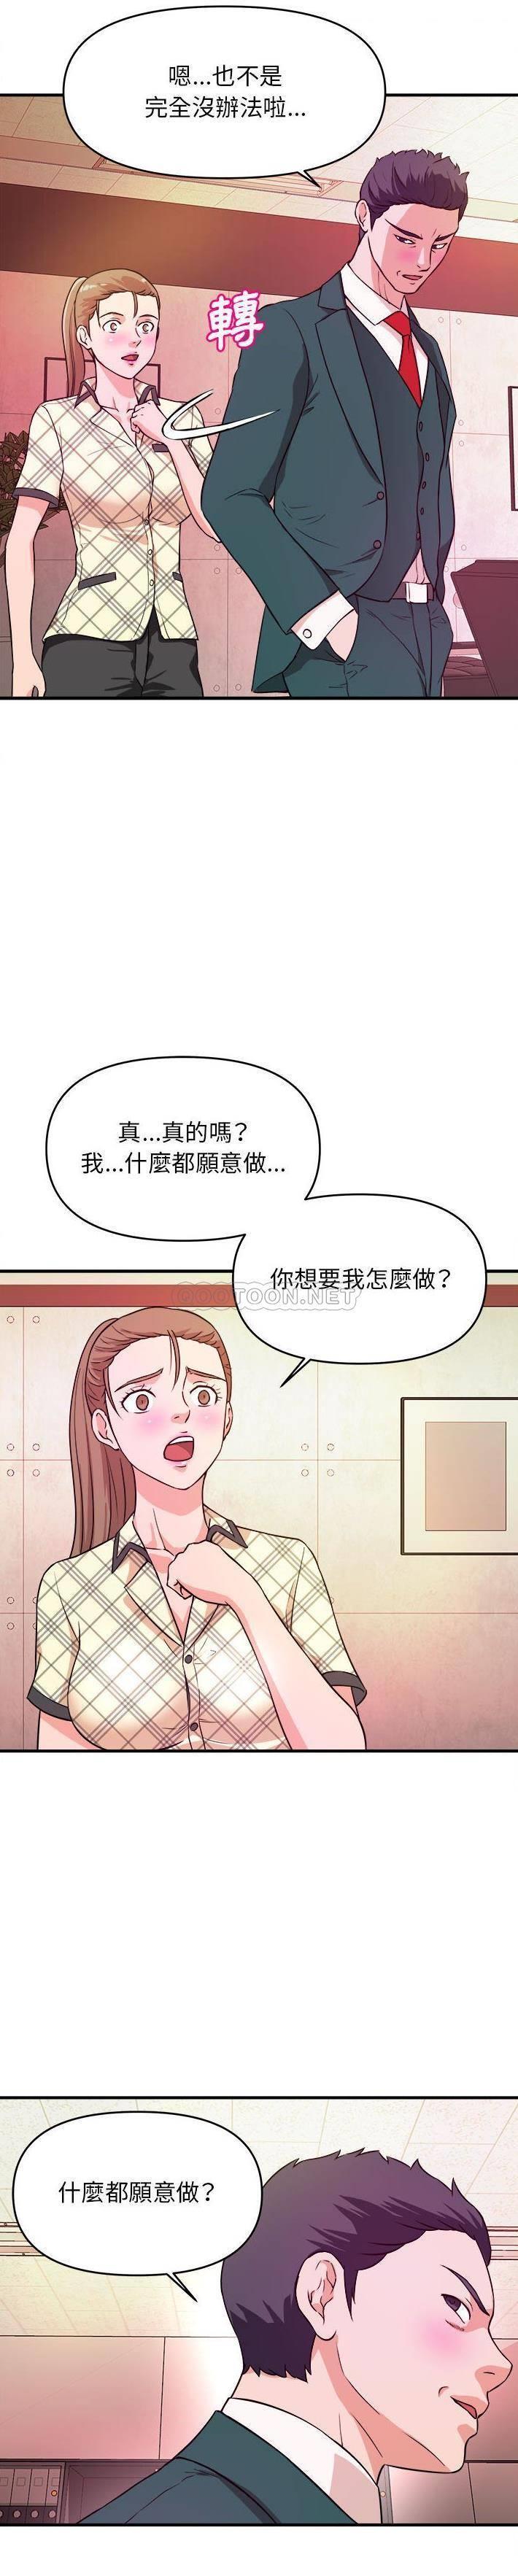 韩国污漫画 沉重的學分 第11话 19